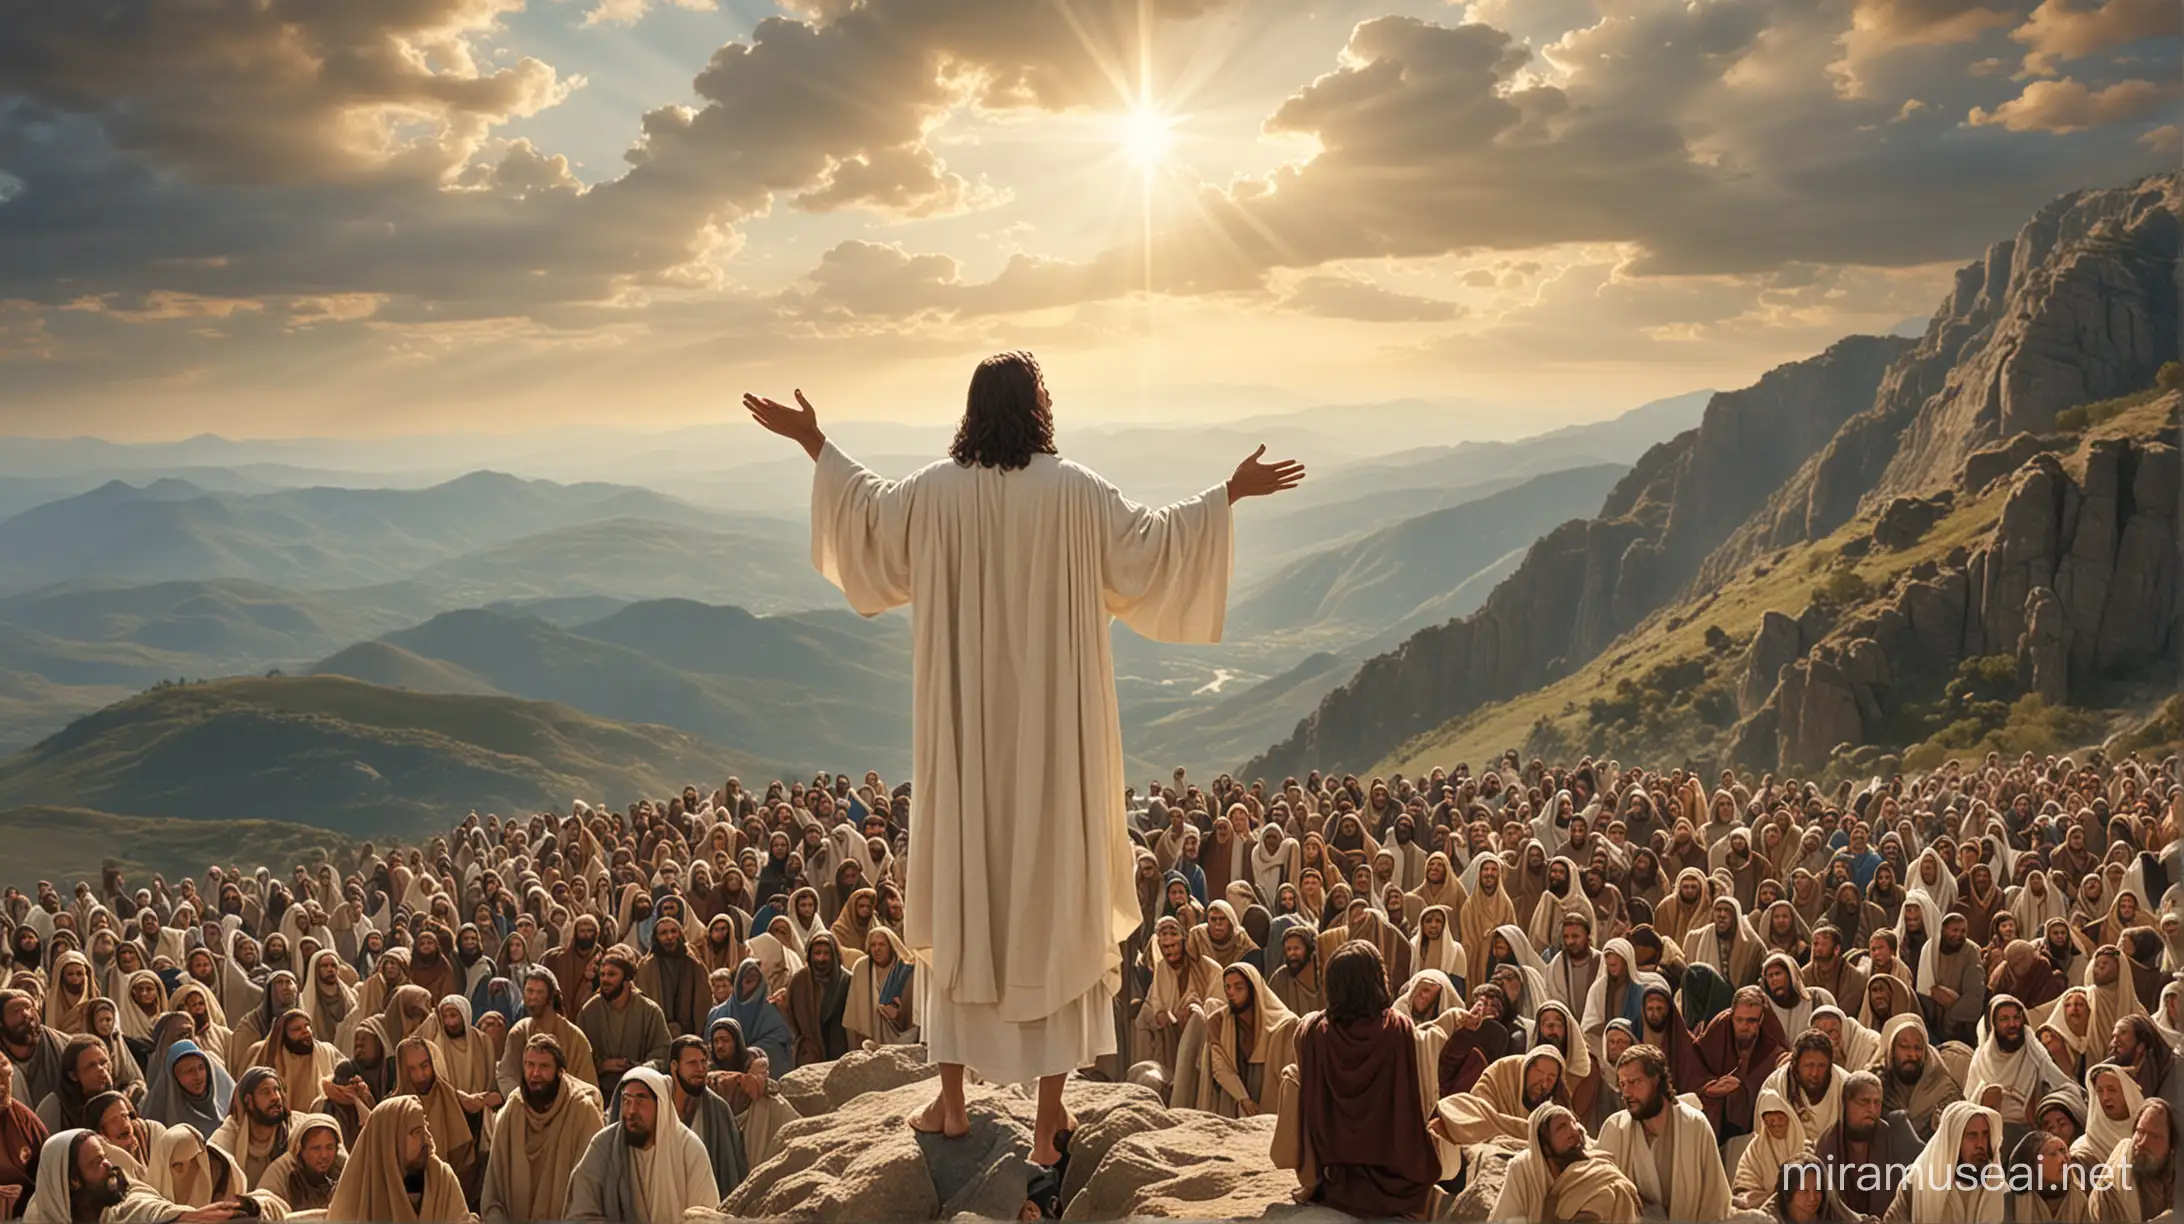 Jesus Preaching Sermon on the Mount to Multitude